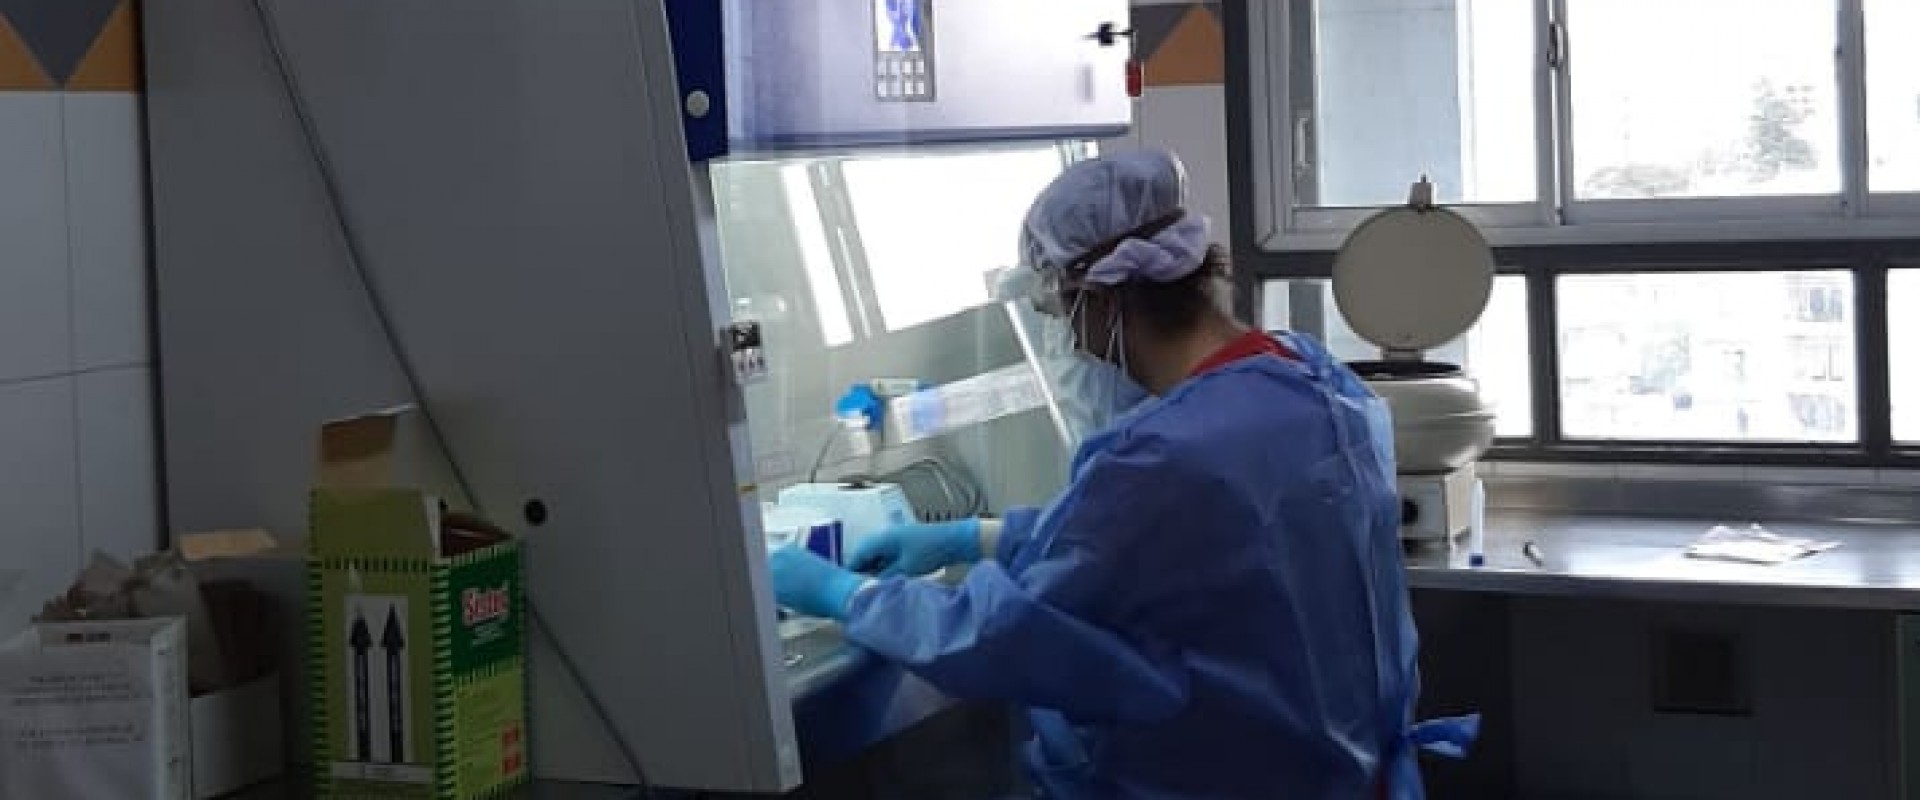 En el Laboratorio central del HMISR se procesan muestras para detección de Sars-COV-2